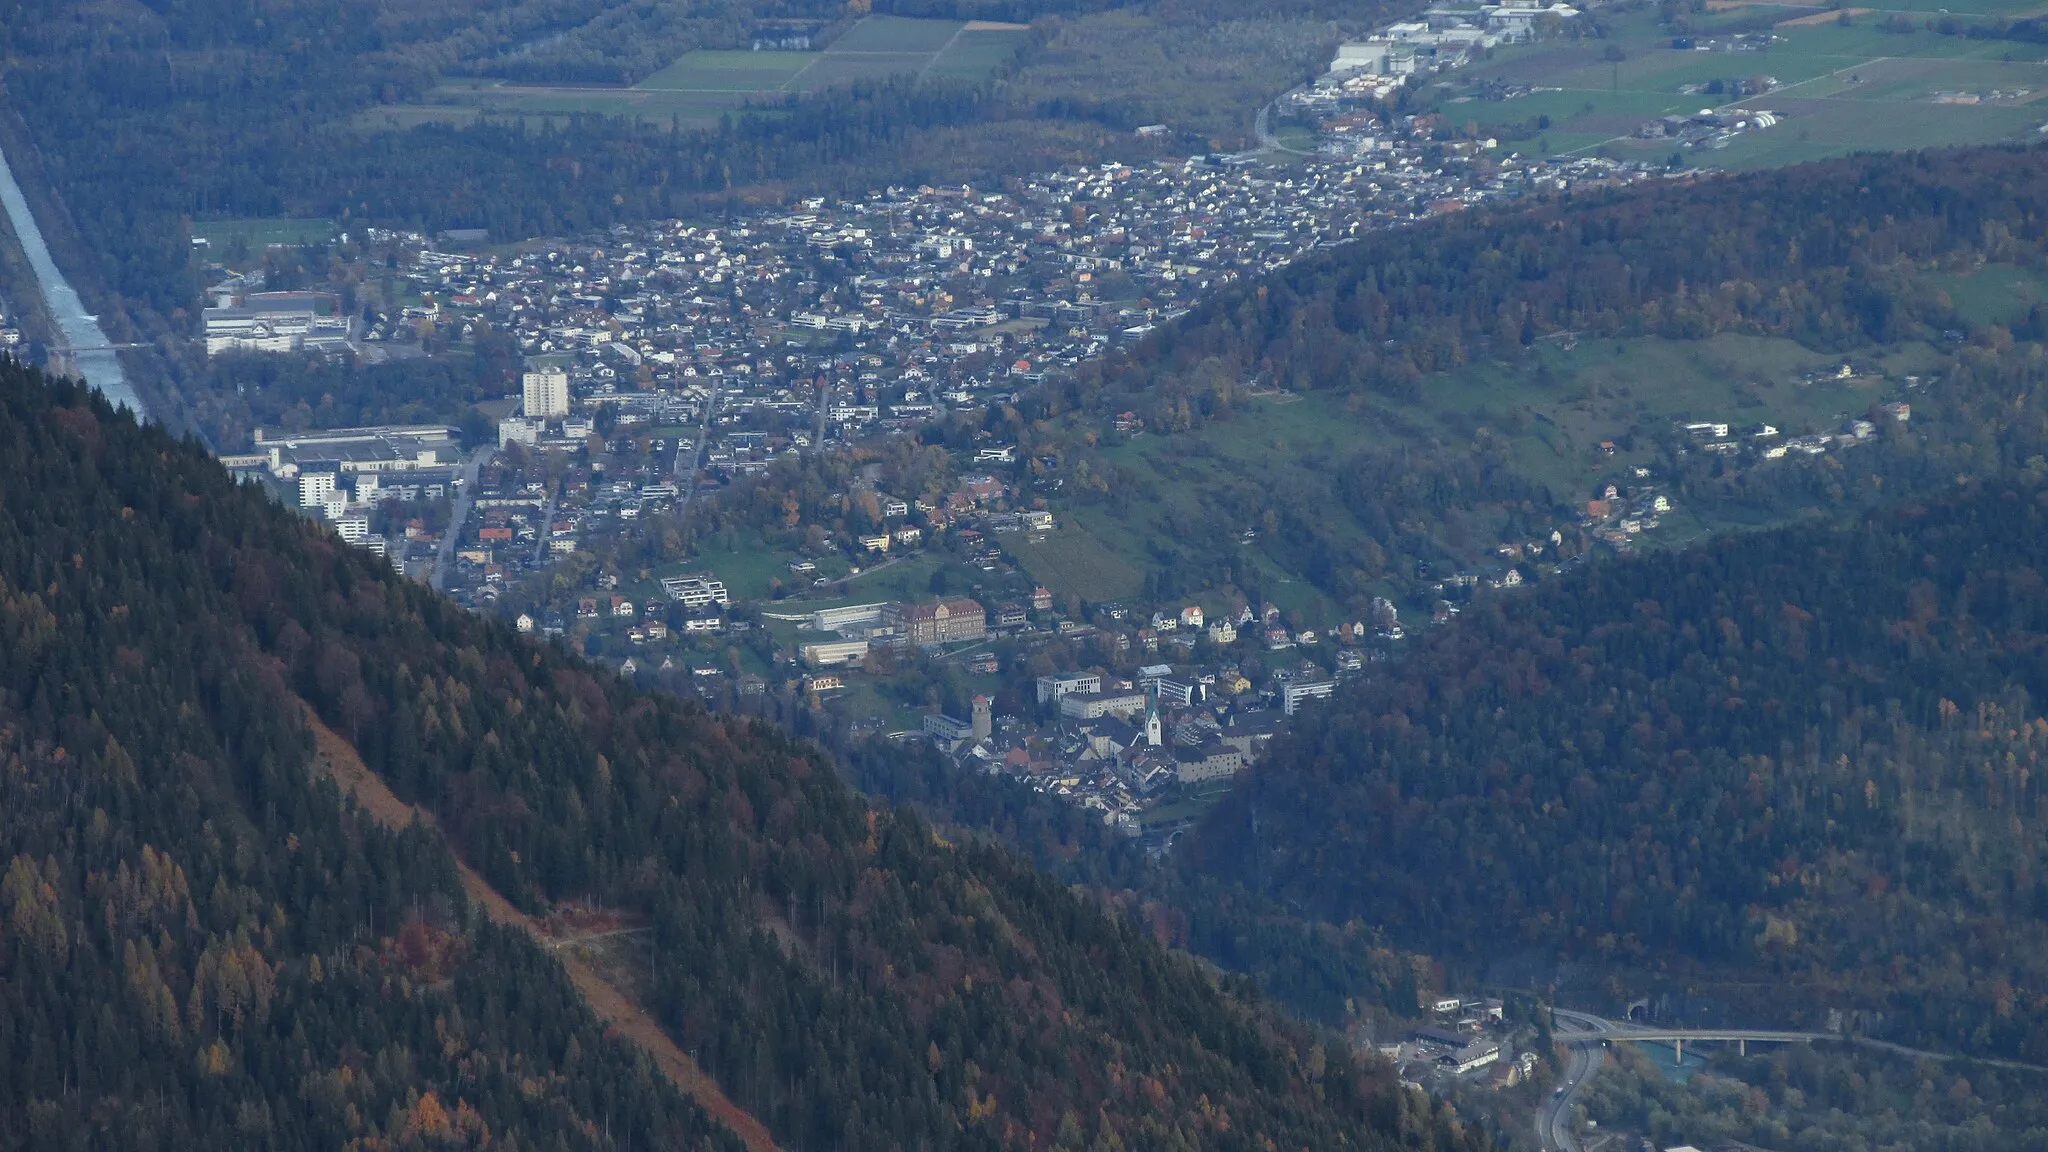 Imagen de Vorarlberg